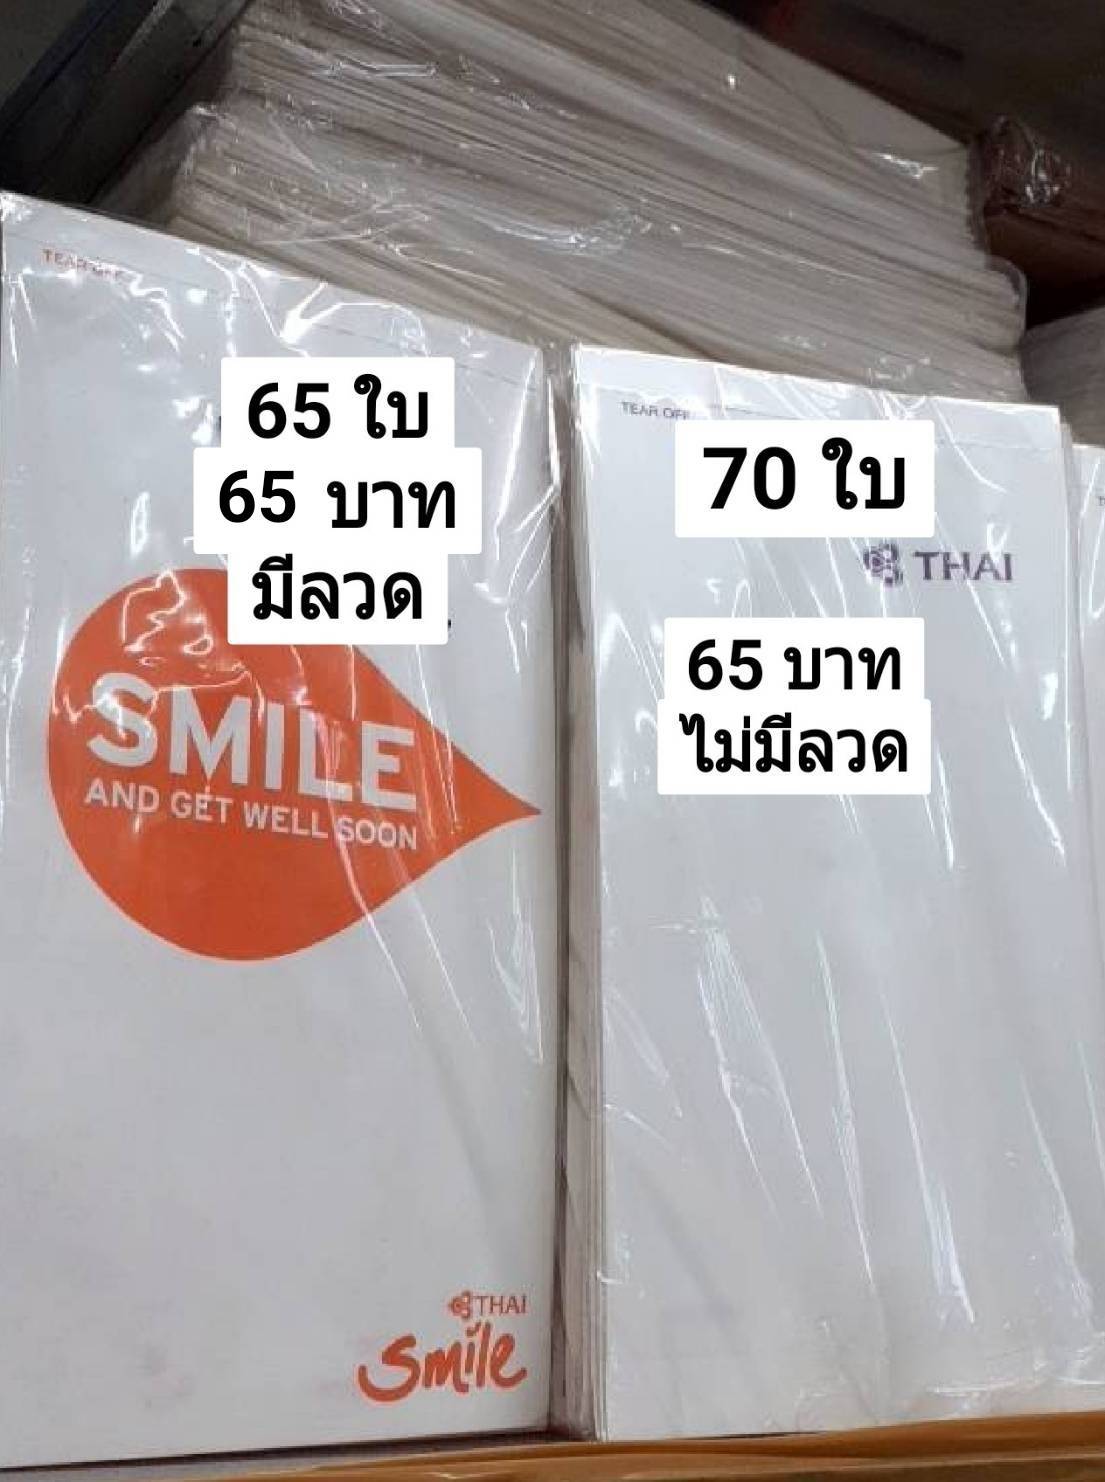 ถุงกระดาษใส่เครื่องสำอางค์,น้ำหอม ไว้ขาย ตรา การบินไทย ,Smile มีลวดและไม่มีลวดตามภาพโปรดระบุ 0